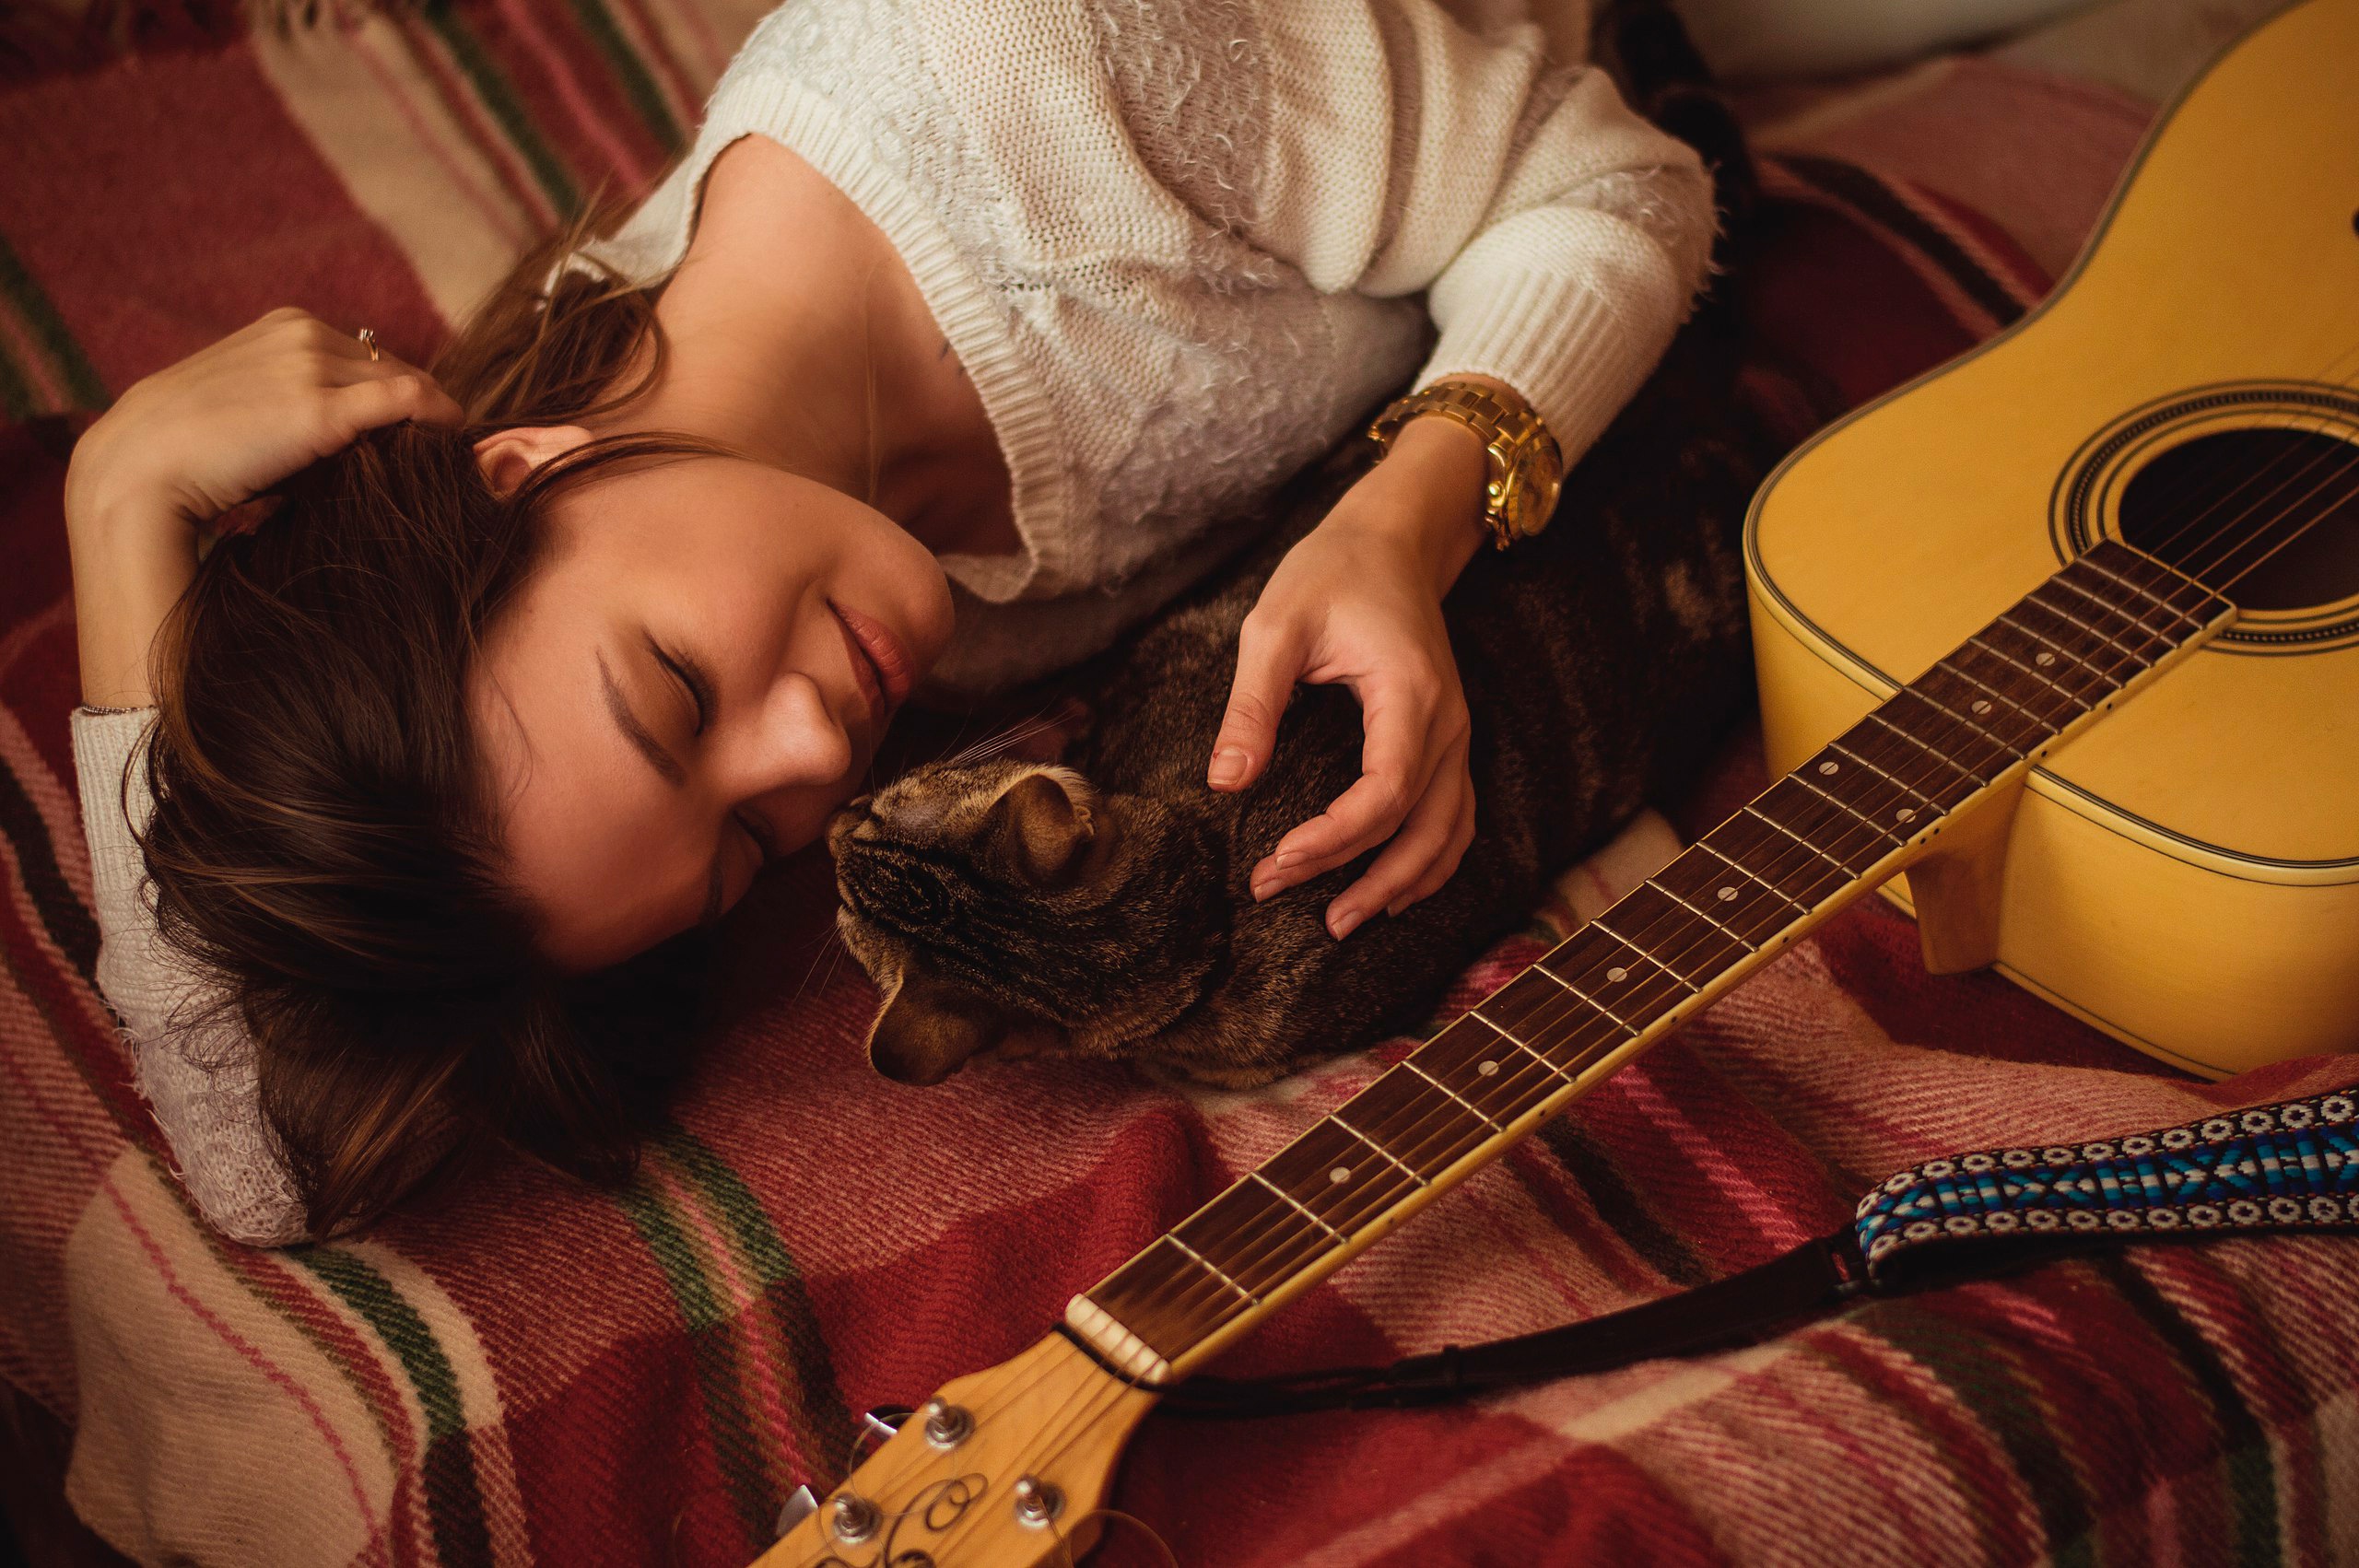 Домой гитара пой. Девушка с гитарой. Девушка с электрогитарой. Девушка лежит с гитарой. Домашняя фотосессия с гитарой.